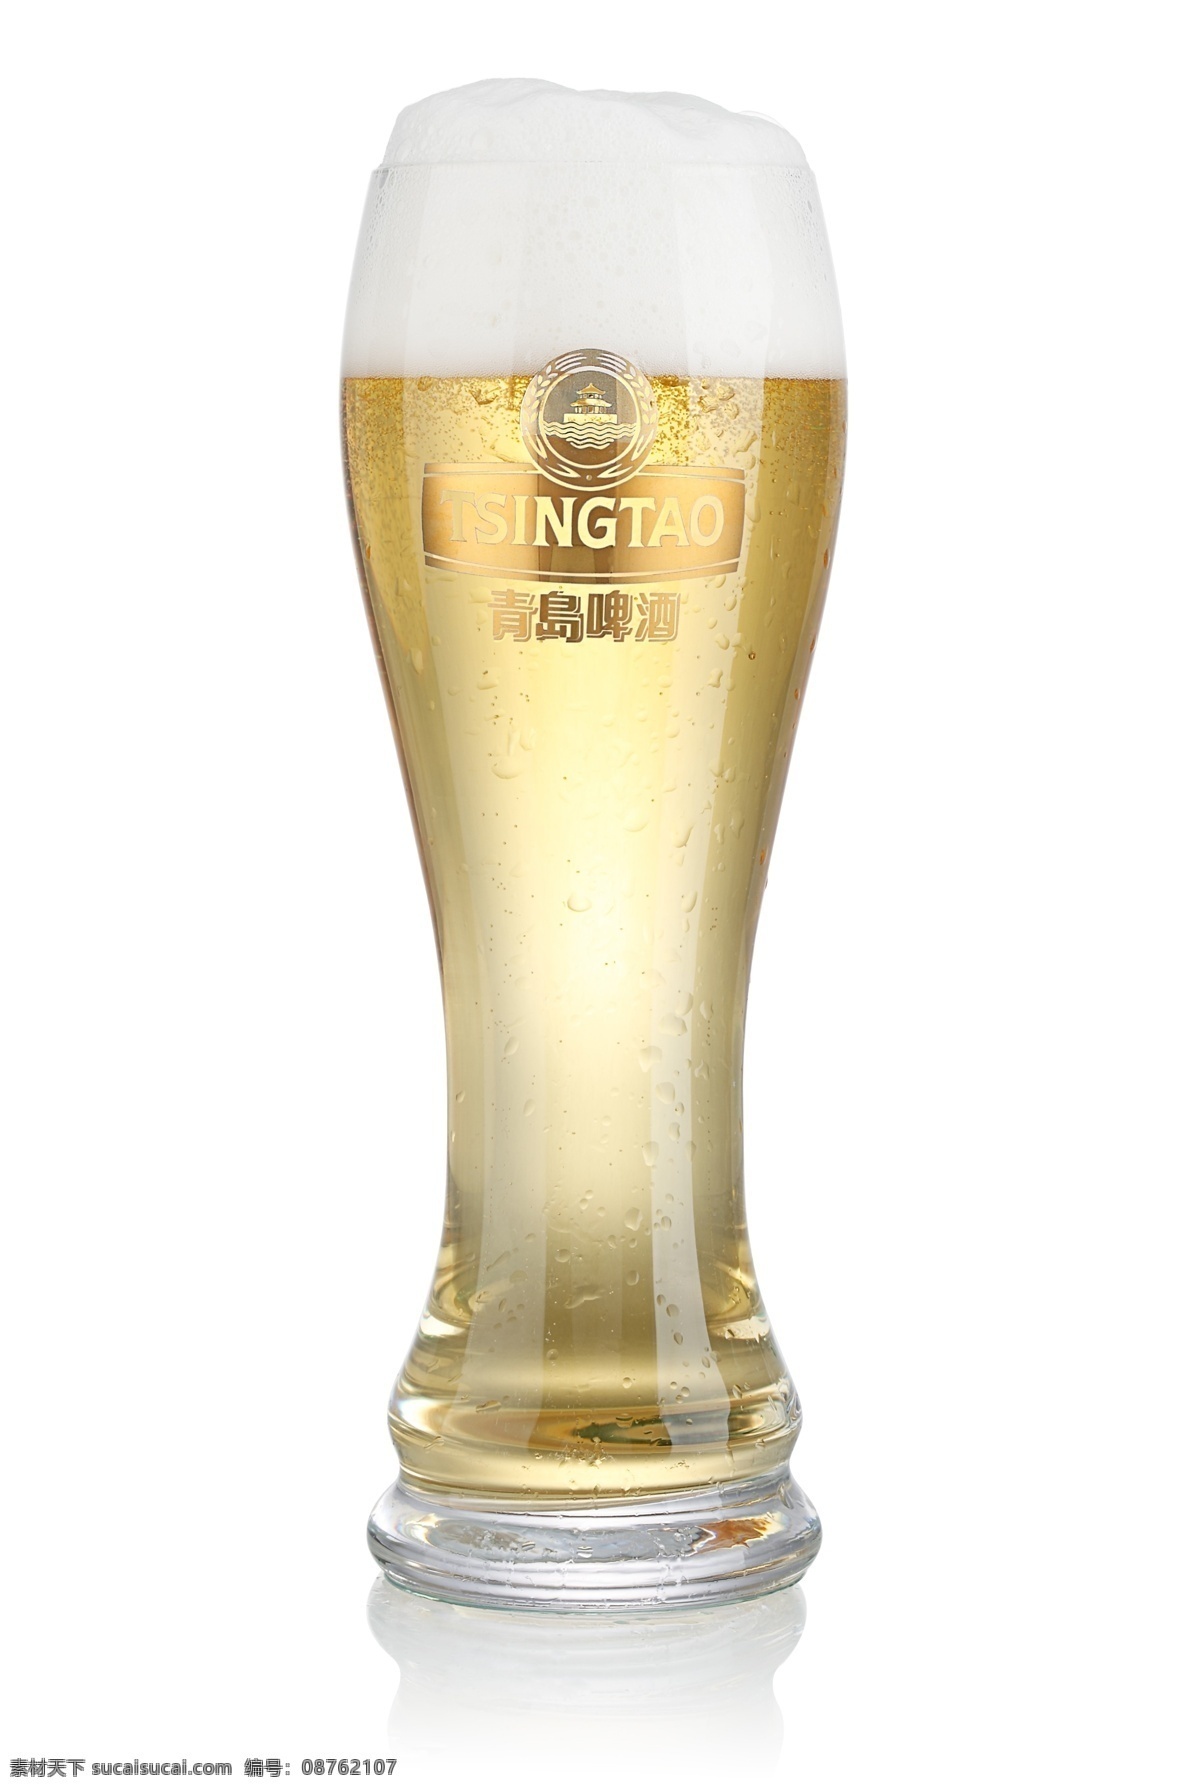 青岛啤酒 纪念 套装 玻璃杯 啤酒杯 杯子 啤酒 酒水 饮料 餐饮美食 饮料酒水